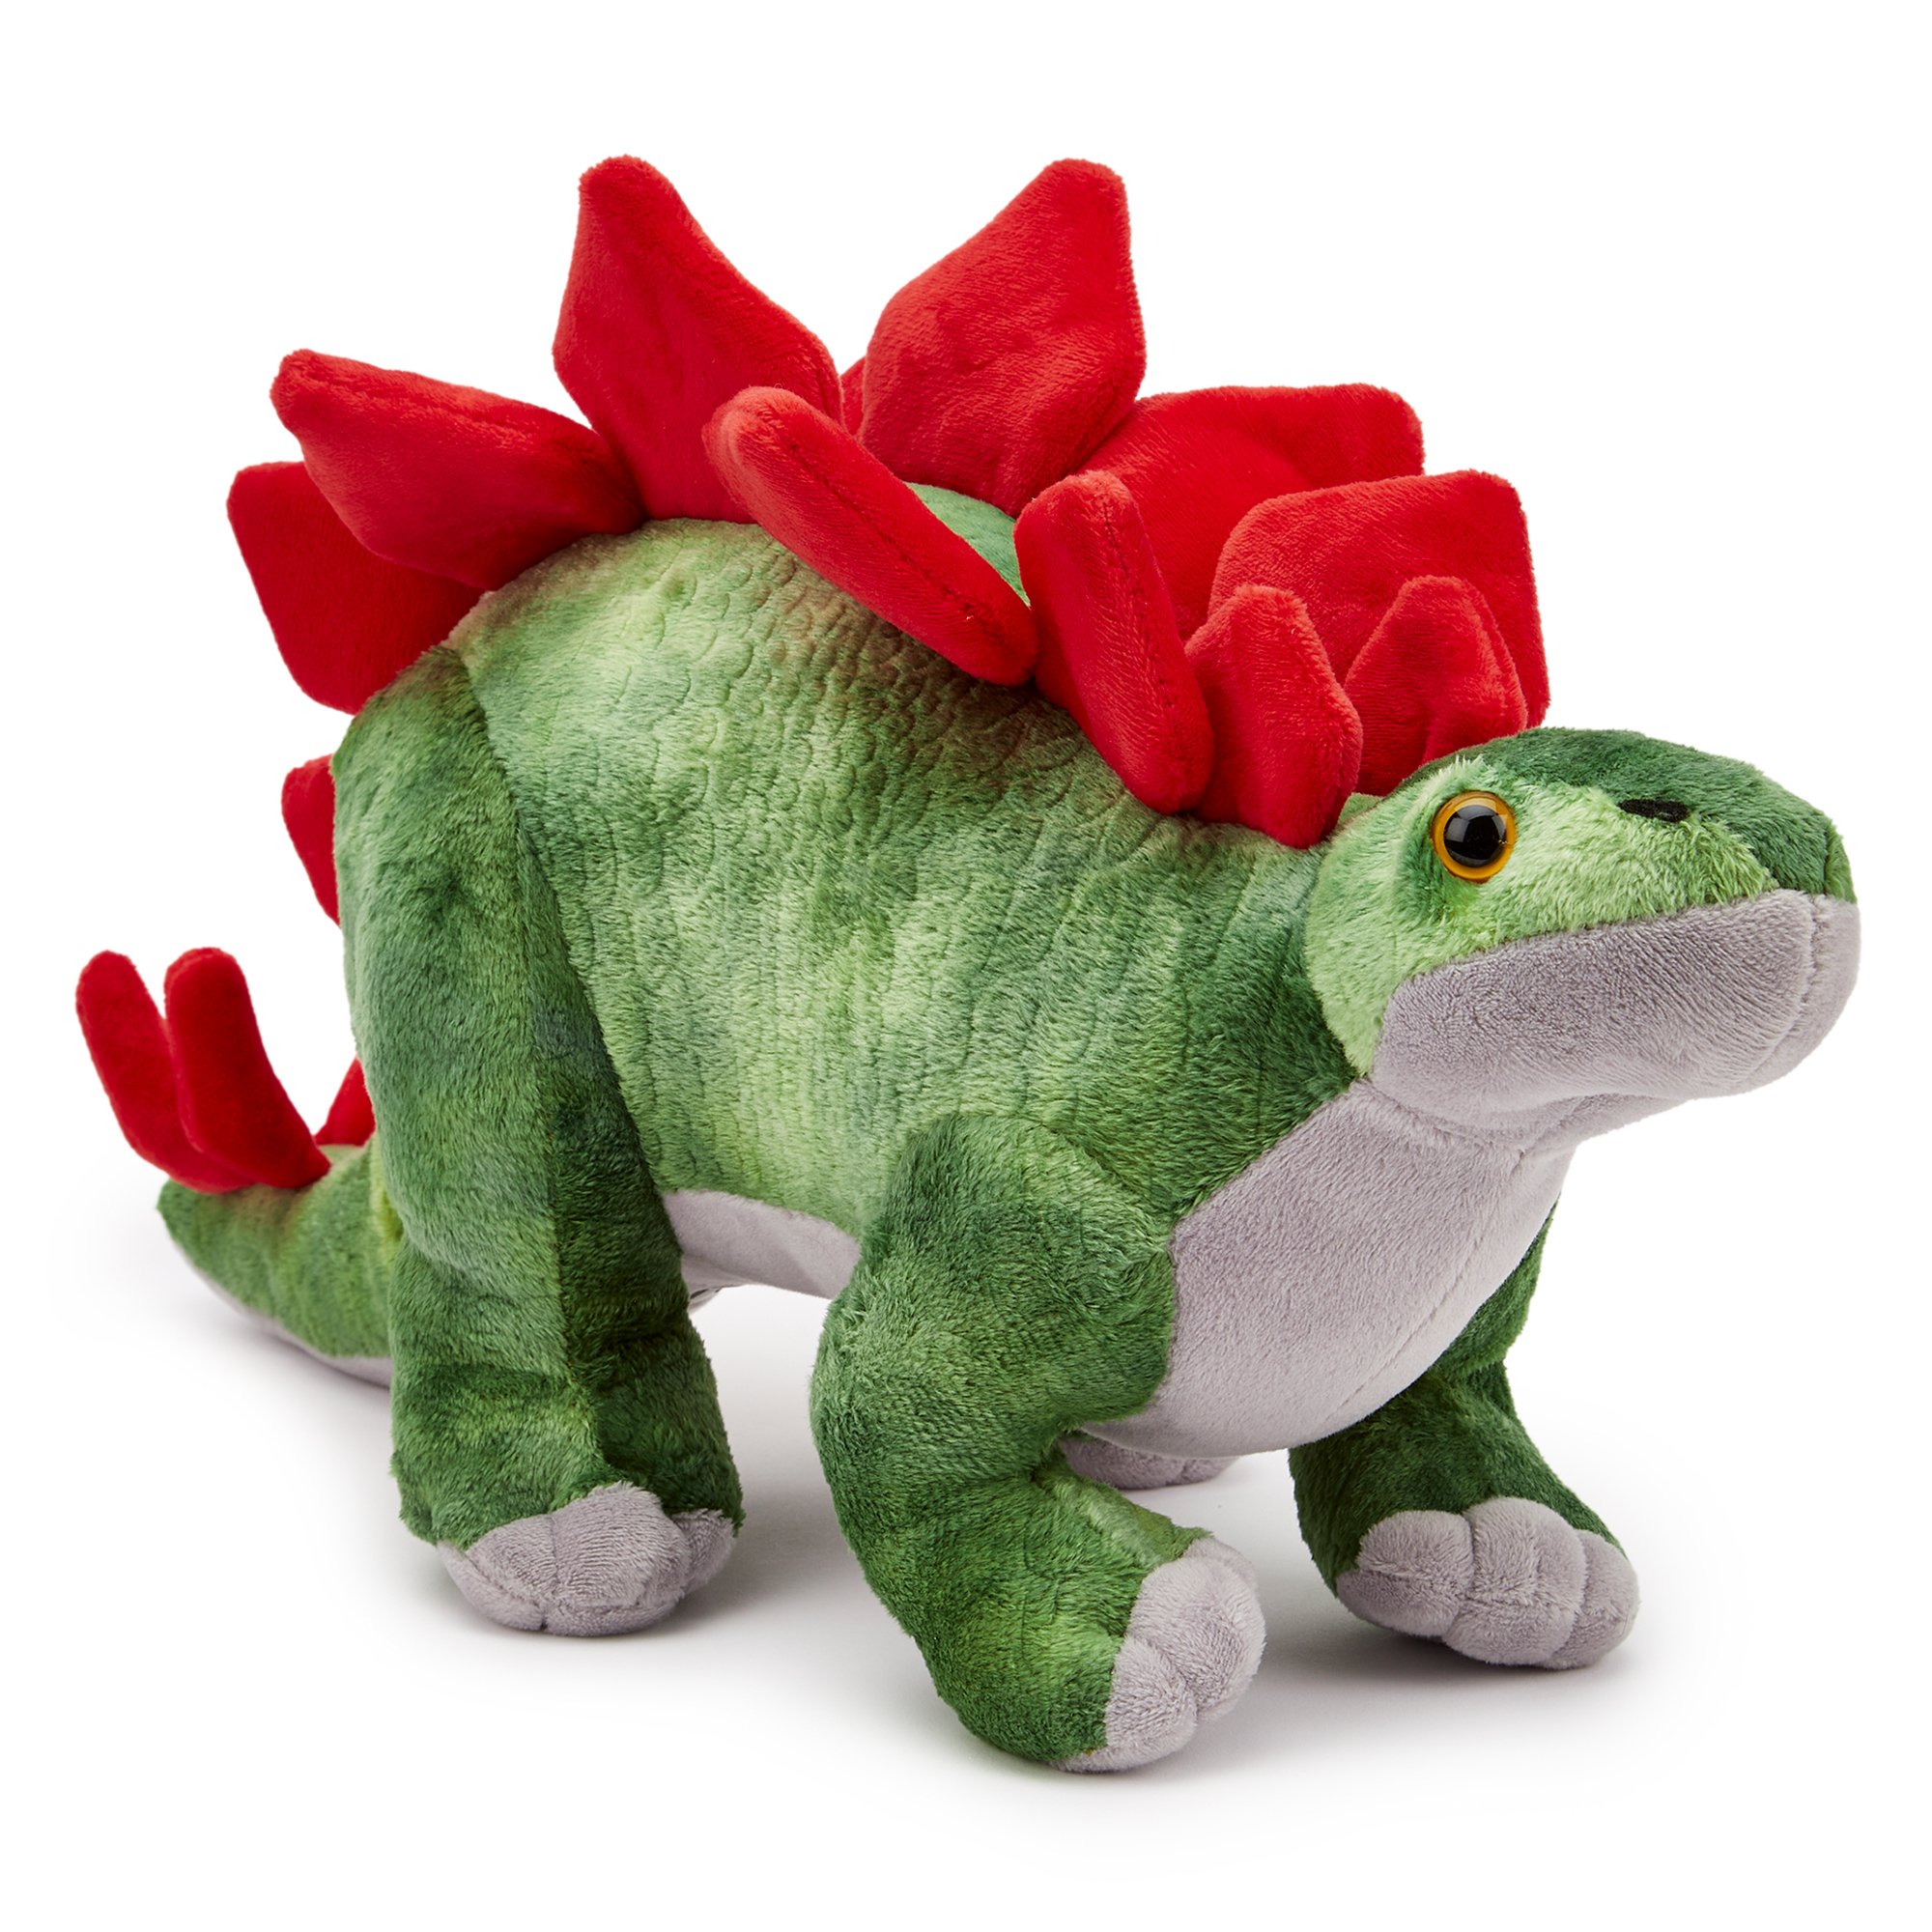 Zappi Stegosaurus 49cm Dinosaur Plush Toy review